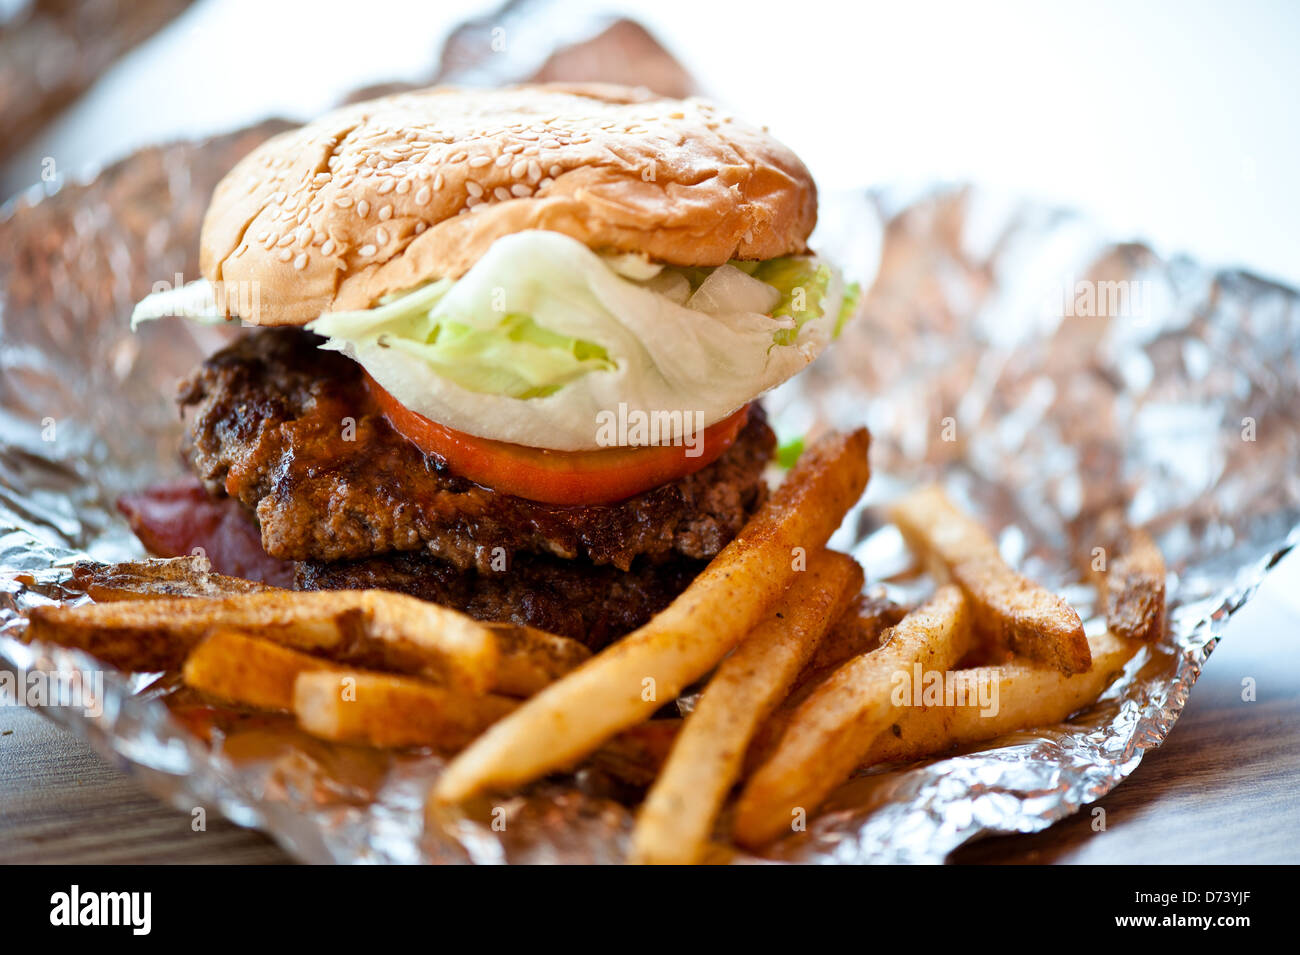 Inquadratura ravvicinata di un burger con doppia polpetta di carne di manzo, pomodori e lattuga. Servita con alcuni cajun patate fritte. Foto Stock